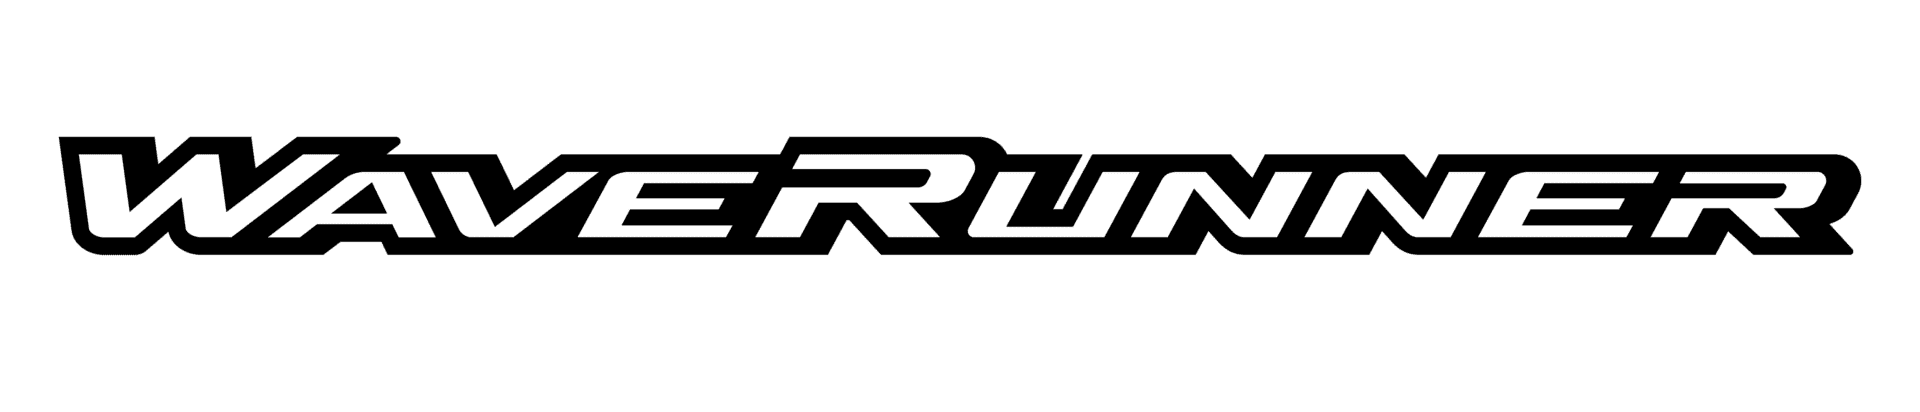 waverunner-logo-trim